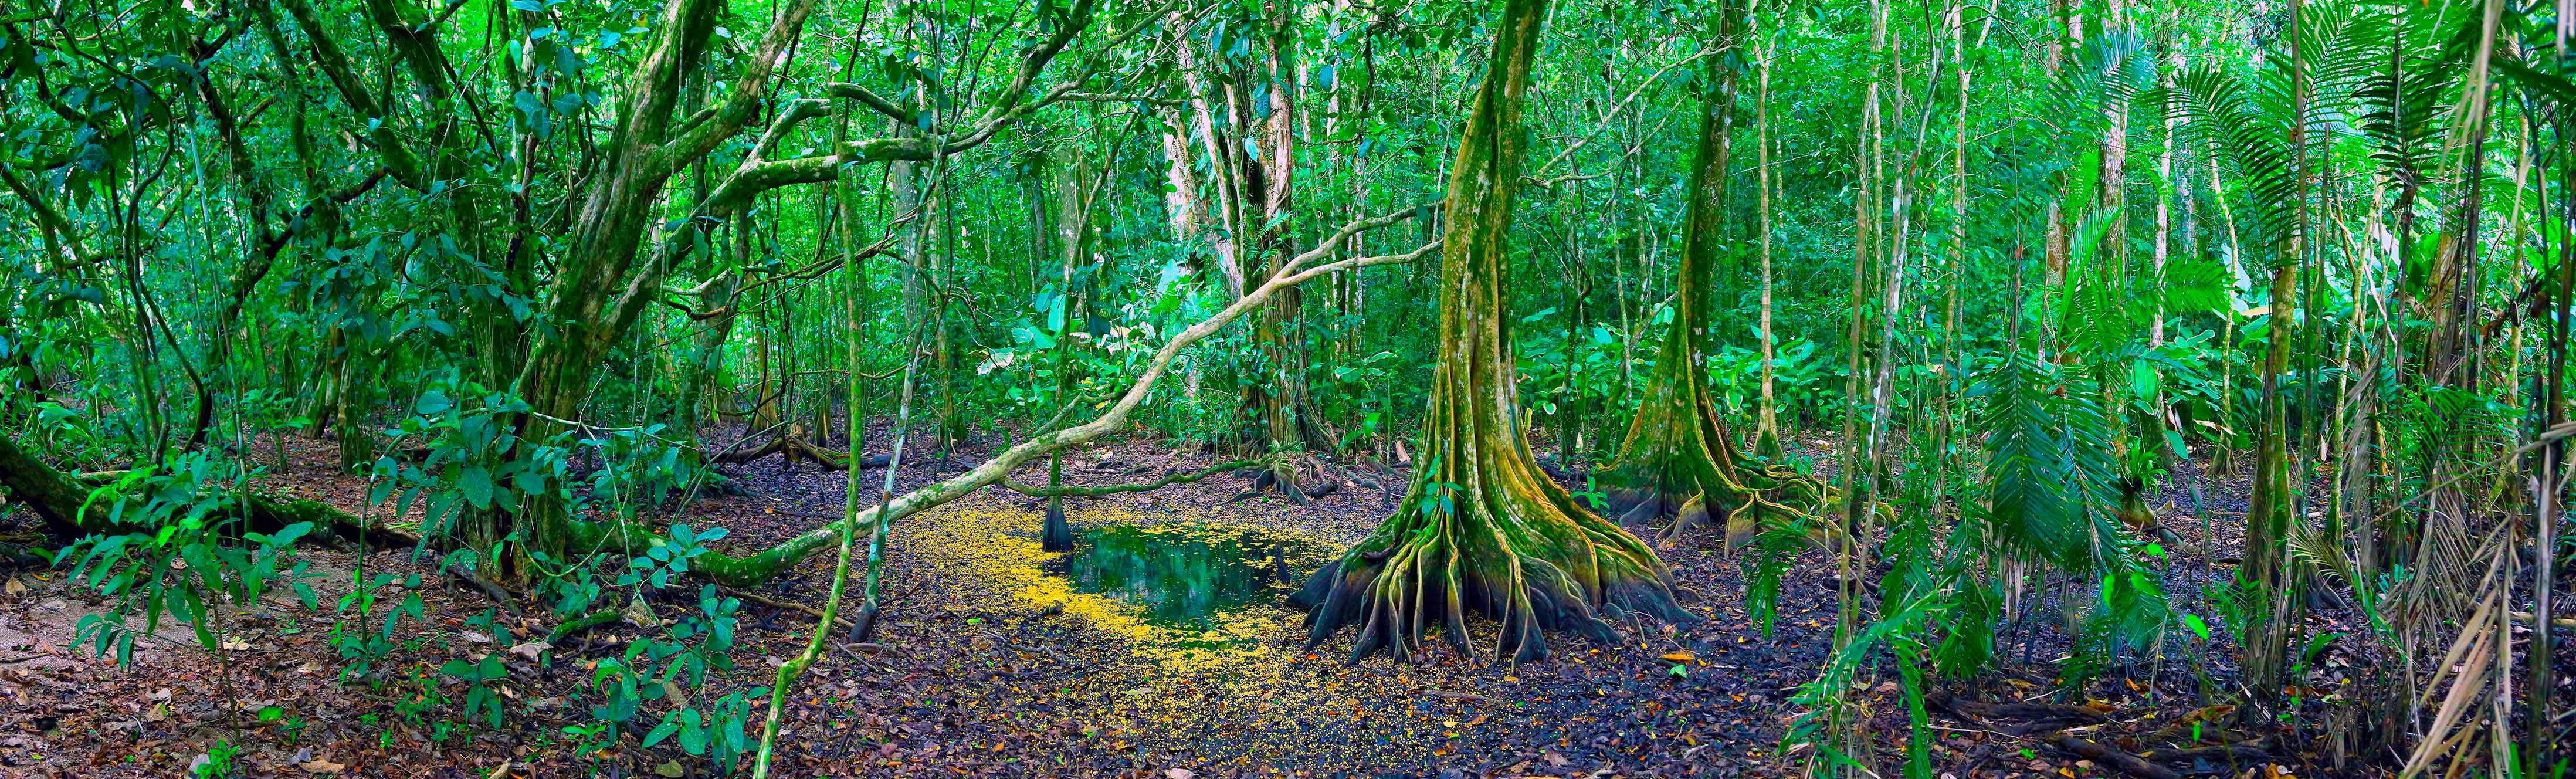 Costa Rica, on la naturalesa en estat pur es mostra de la manera més exuberant.